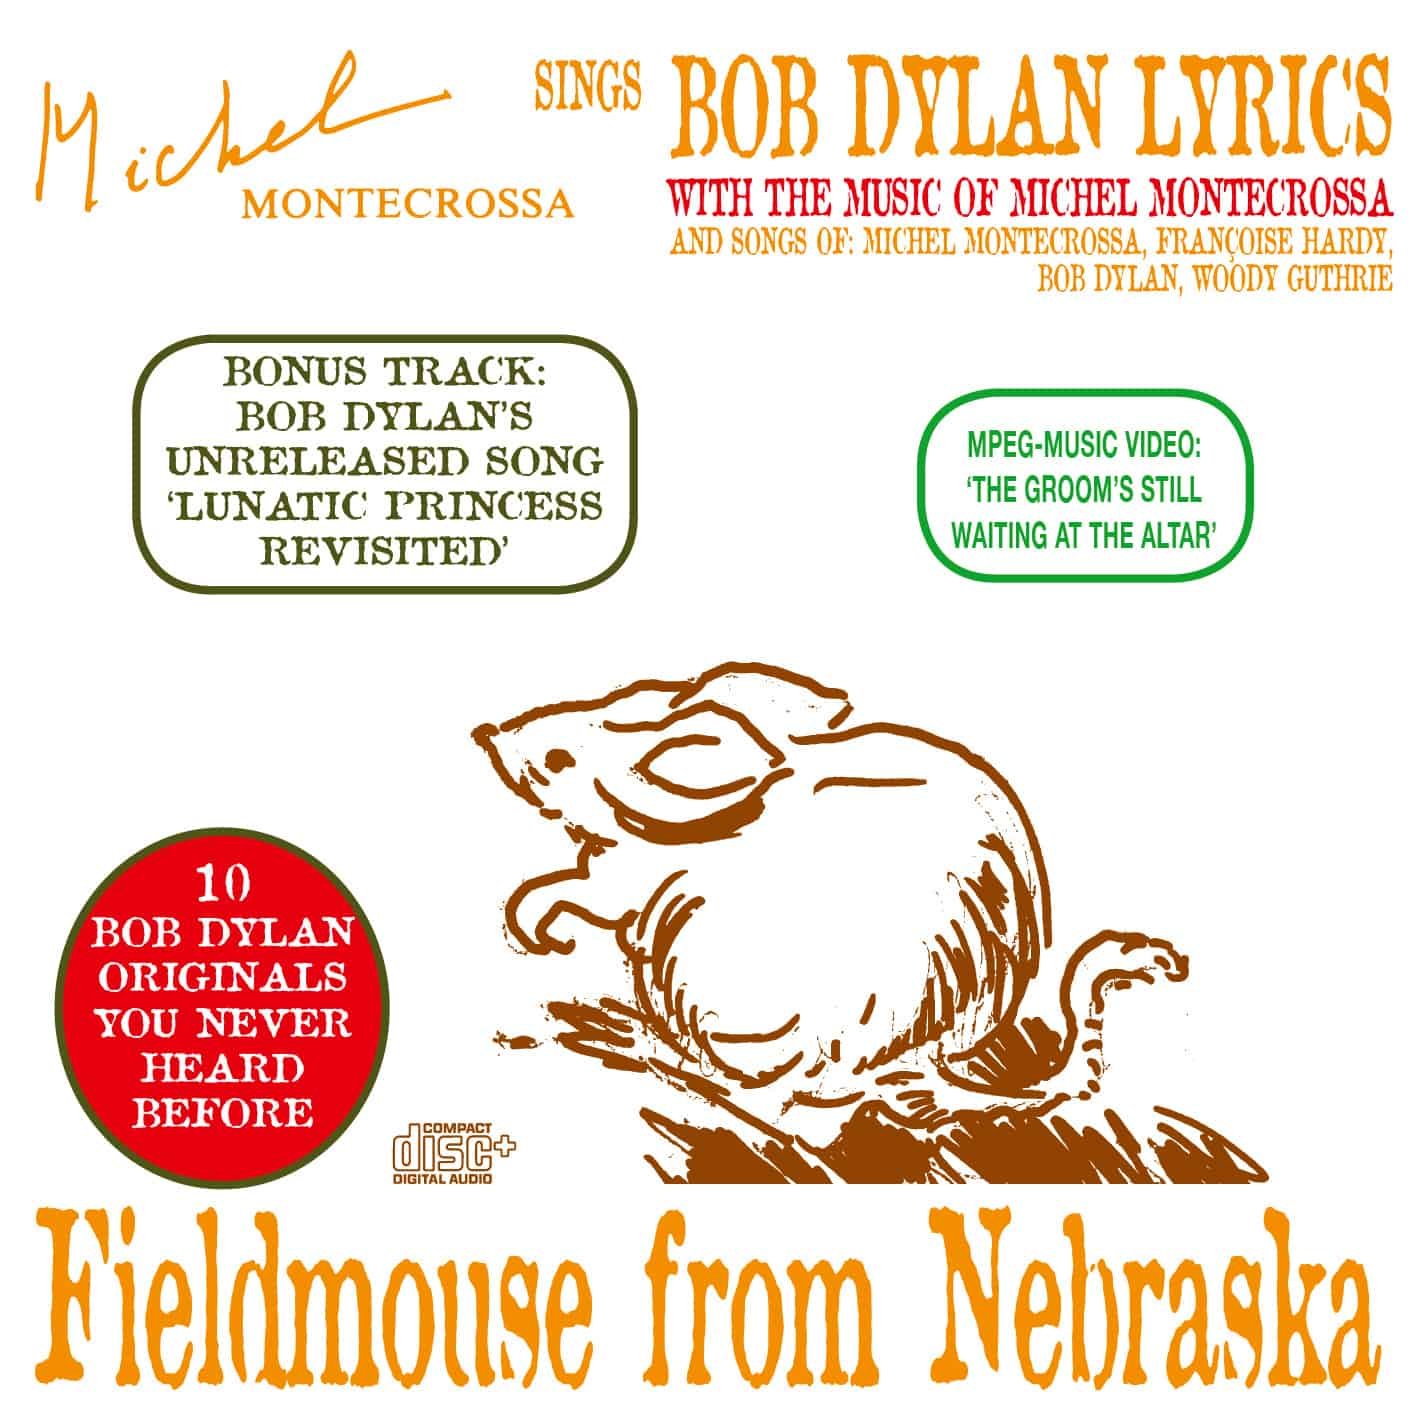 Fieldmouse from Nebraska